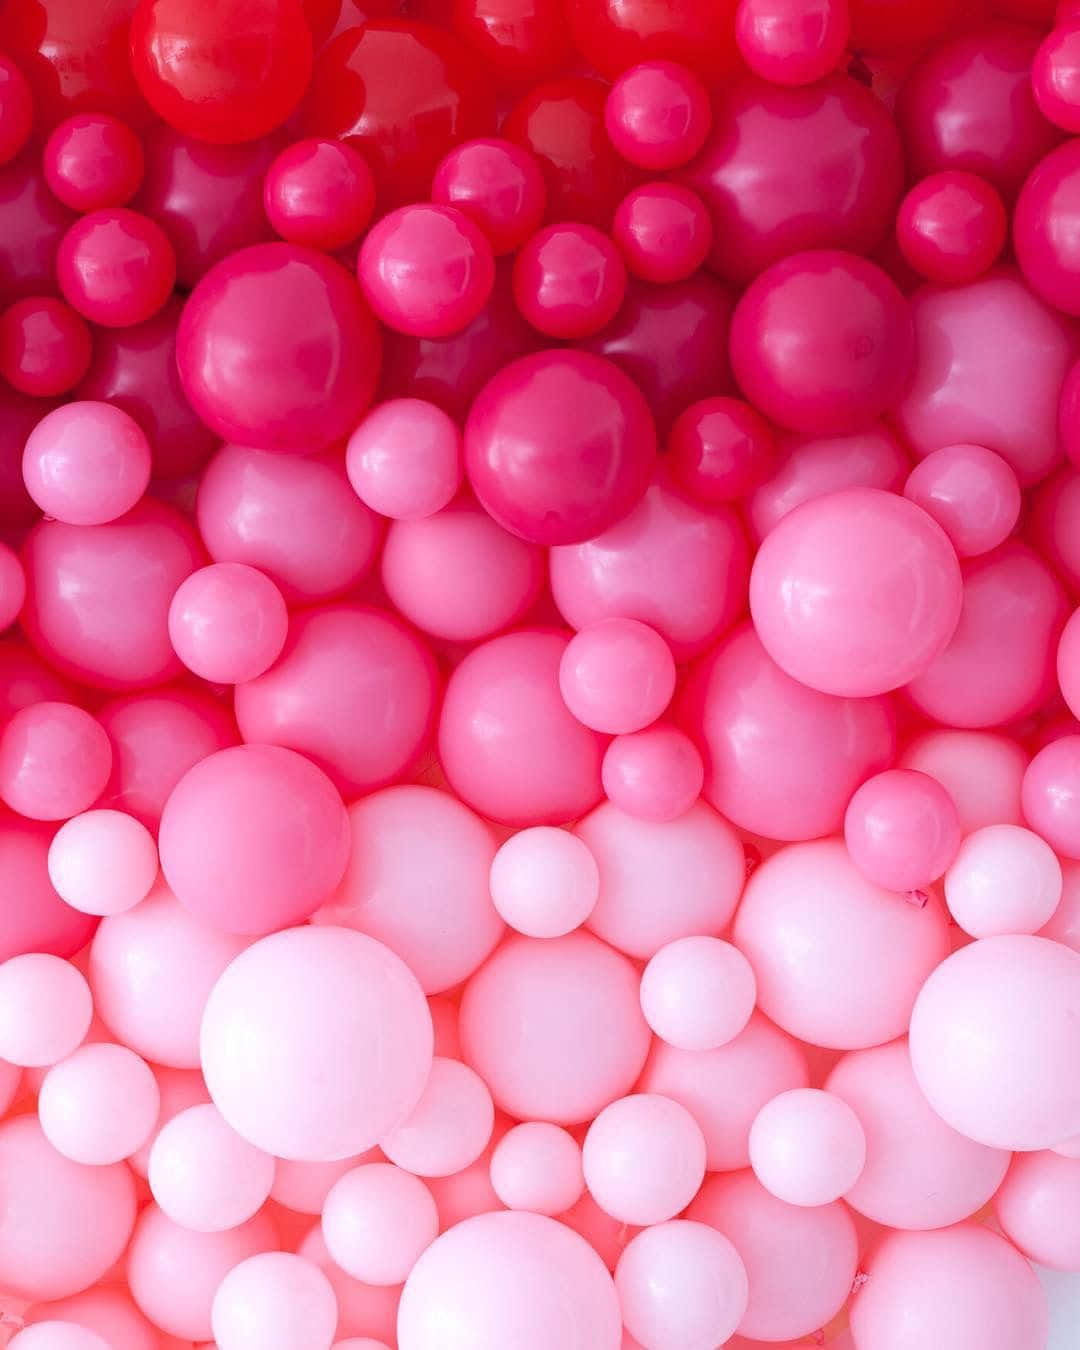 Hintergrundmit Ballons: Rosa Ballons Mit Unterschiedlicher Farbintensität.